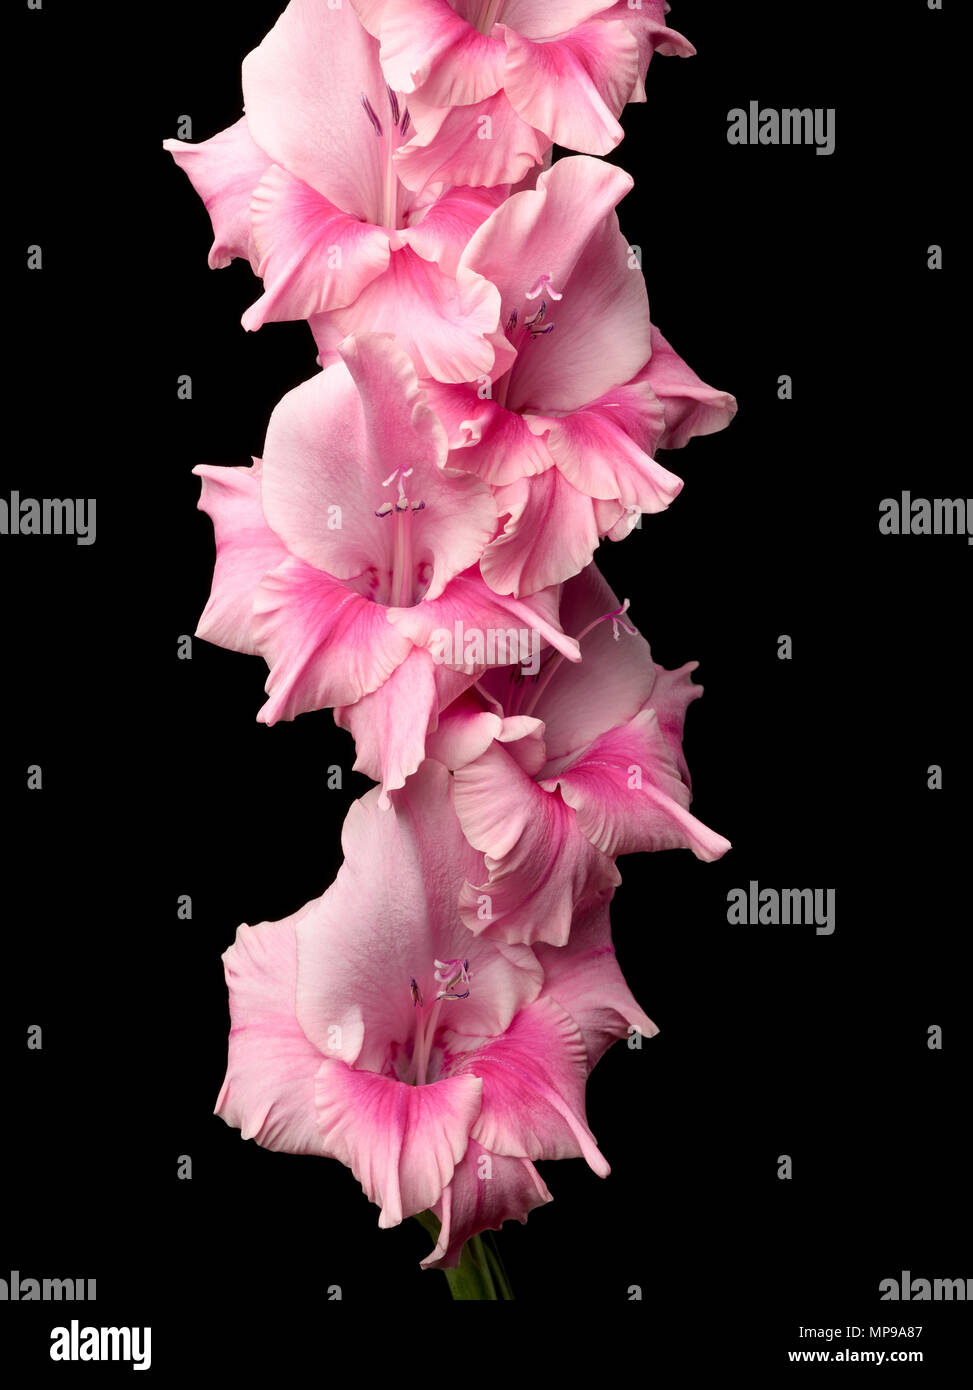 Studio Bild von Gladiolen stemm in voller Blüte, schwarzen Hintergrund. Stockfoto